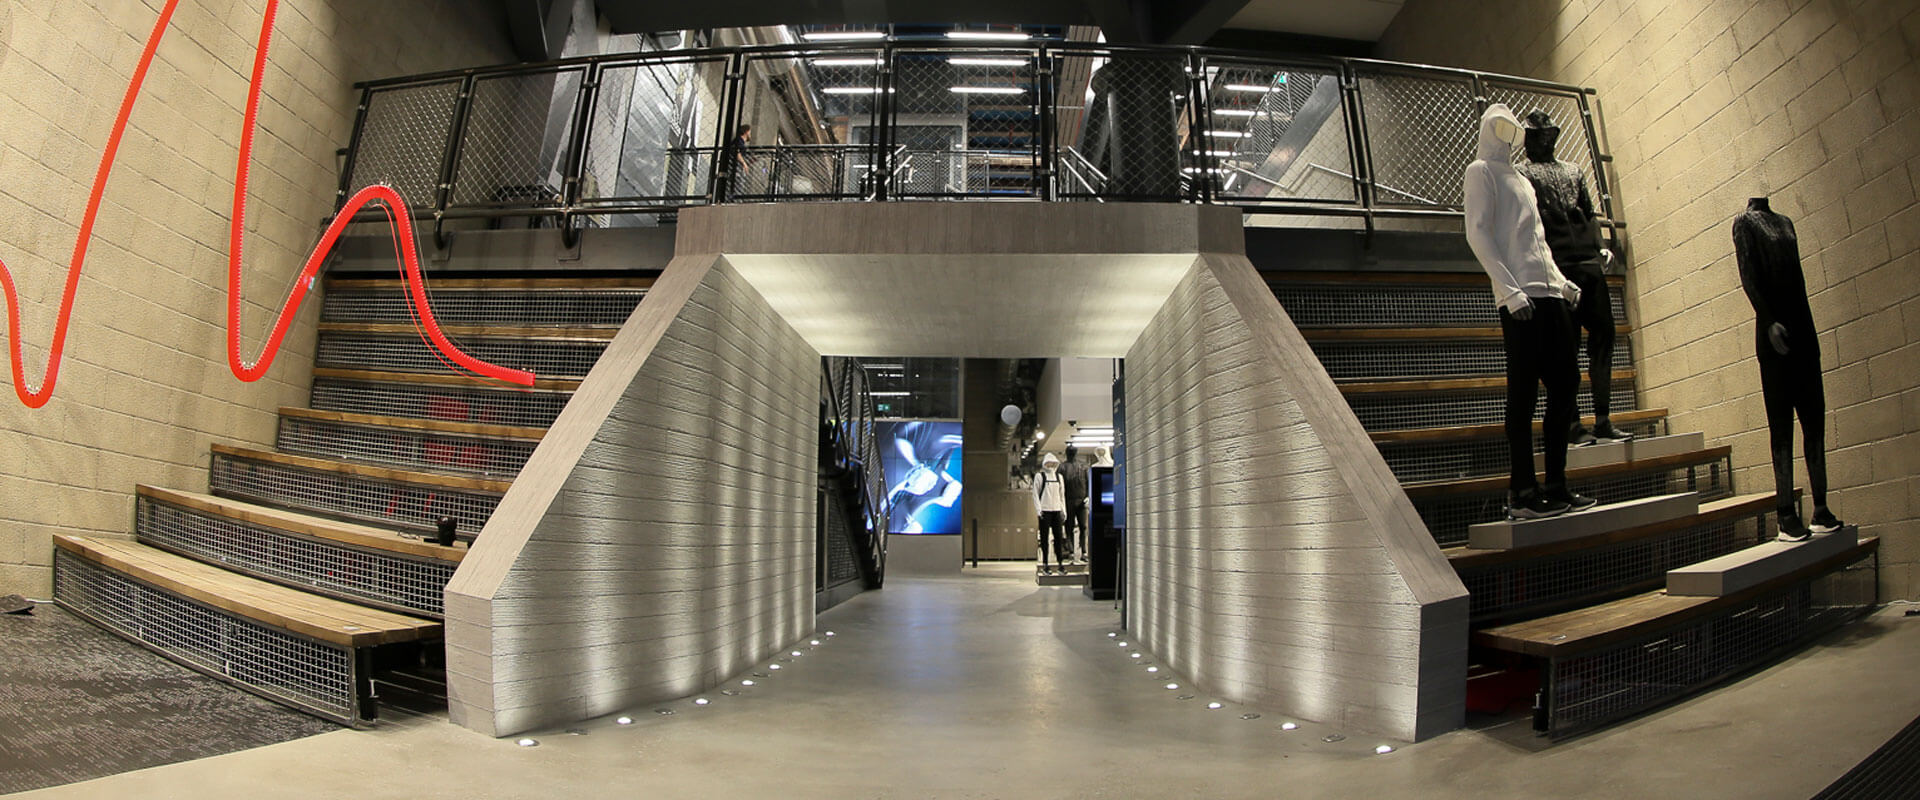 Oktalite | Adidas Brand Center Mailand